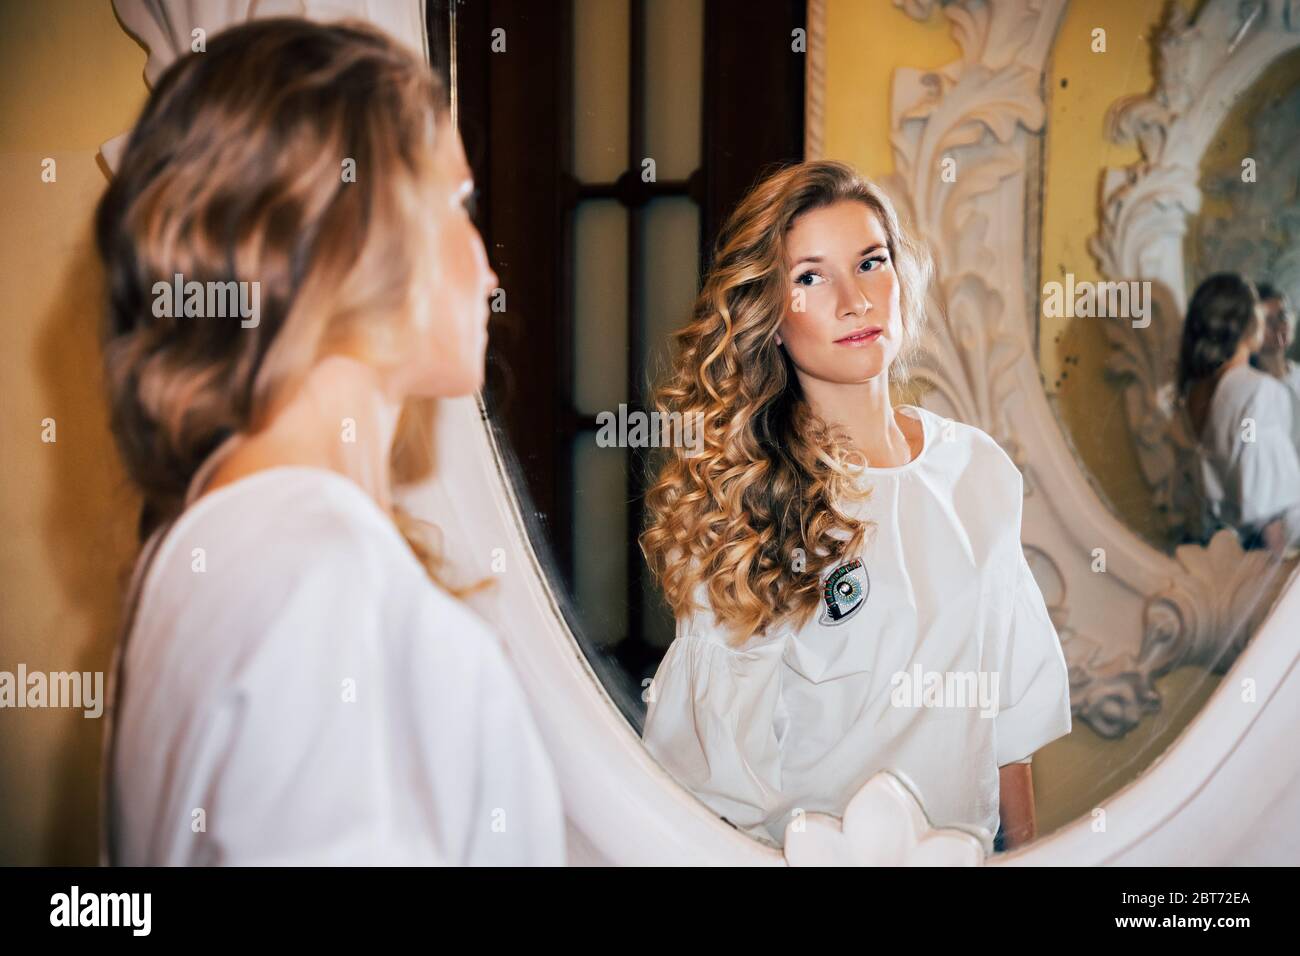 Schönes Mädchen mit langen lockigen blonden Haaren, trägt ein leichtes Top, schaut sich in einem reich verzierten Spiegel an. Stockfoto